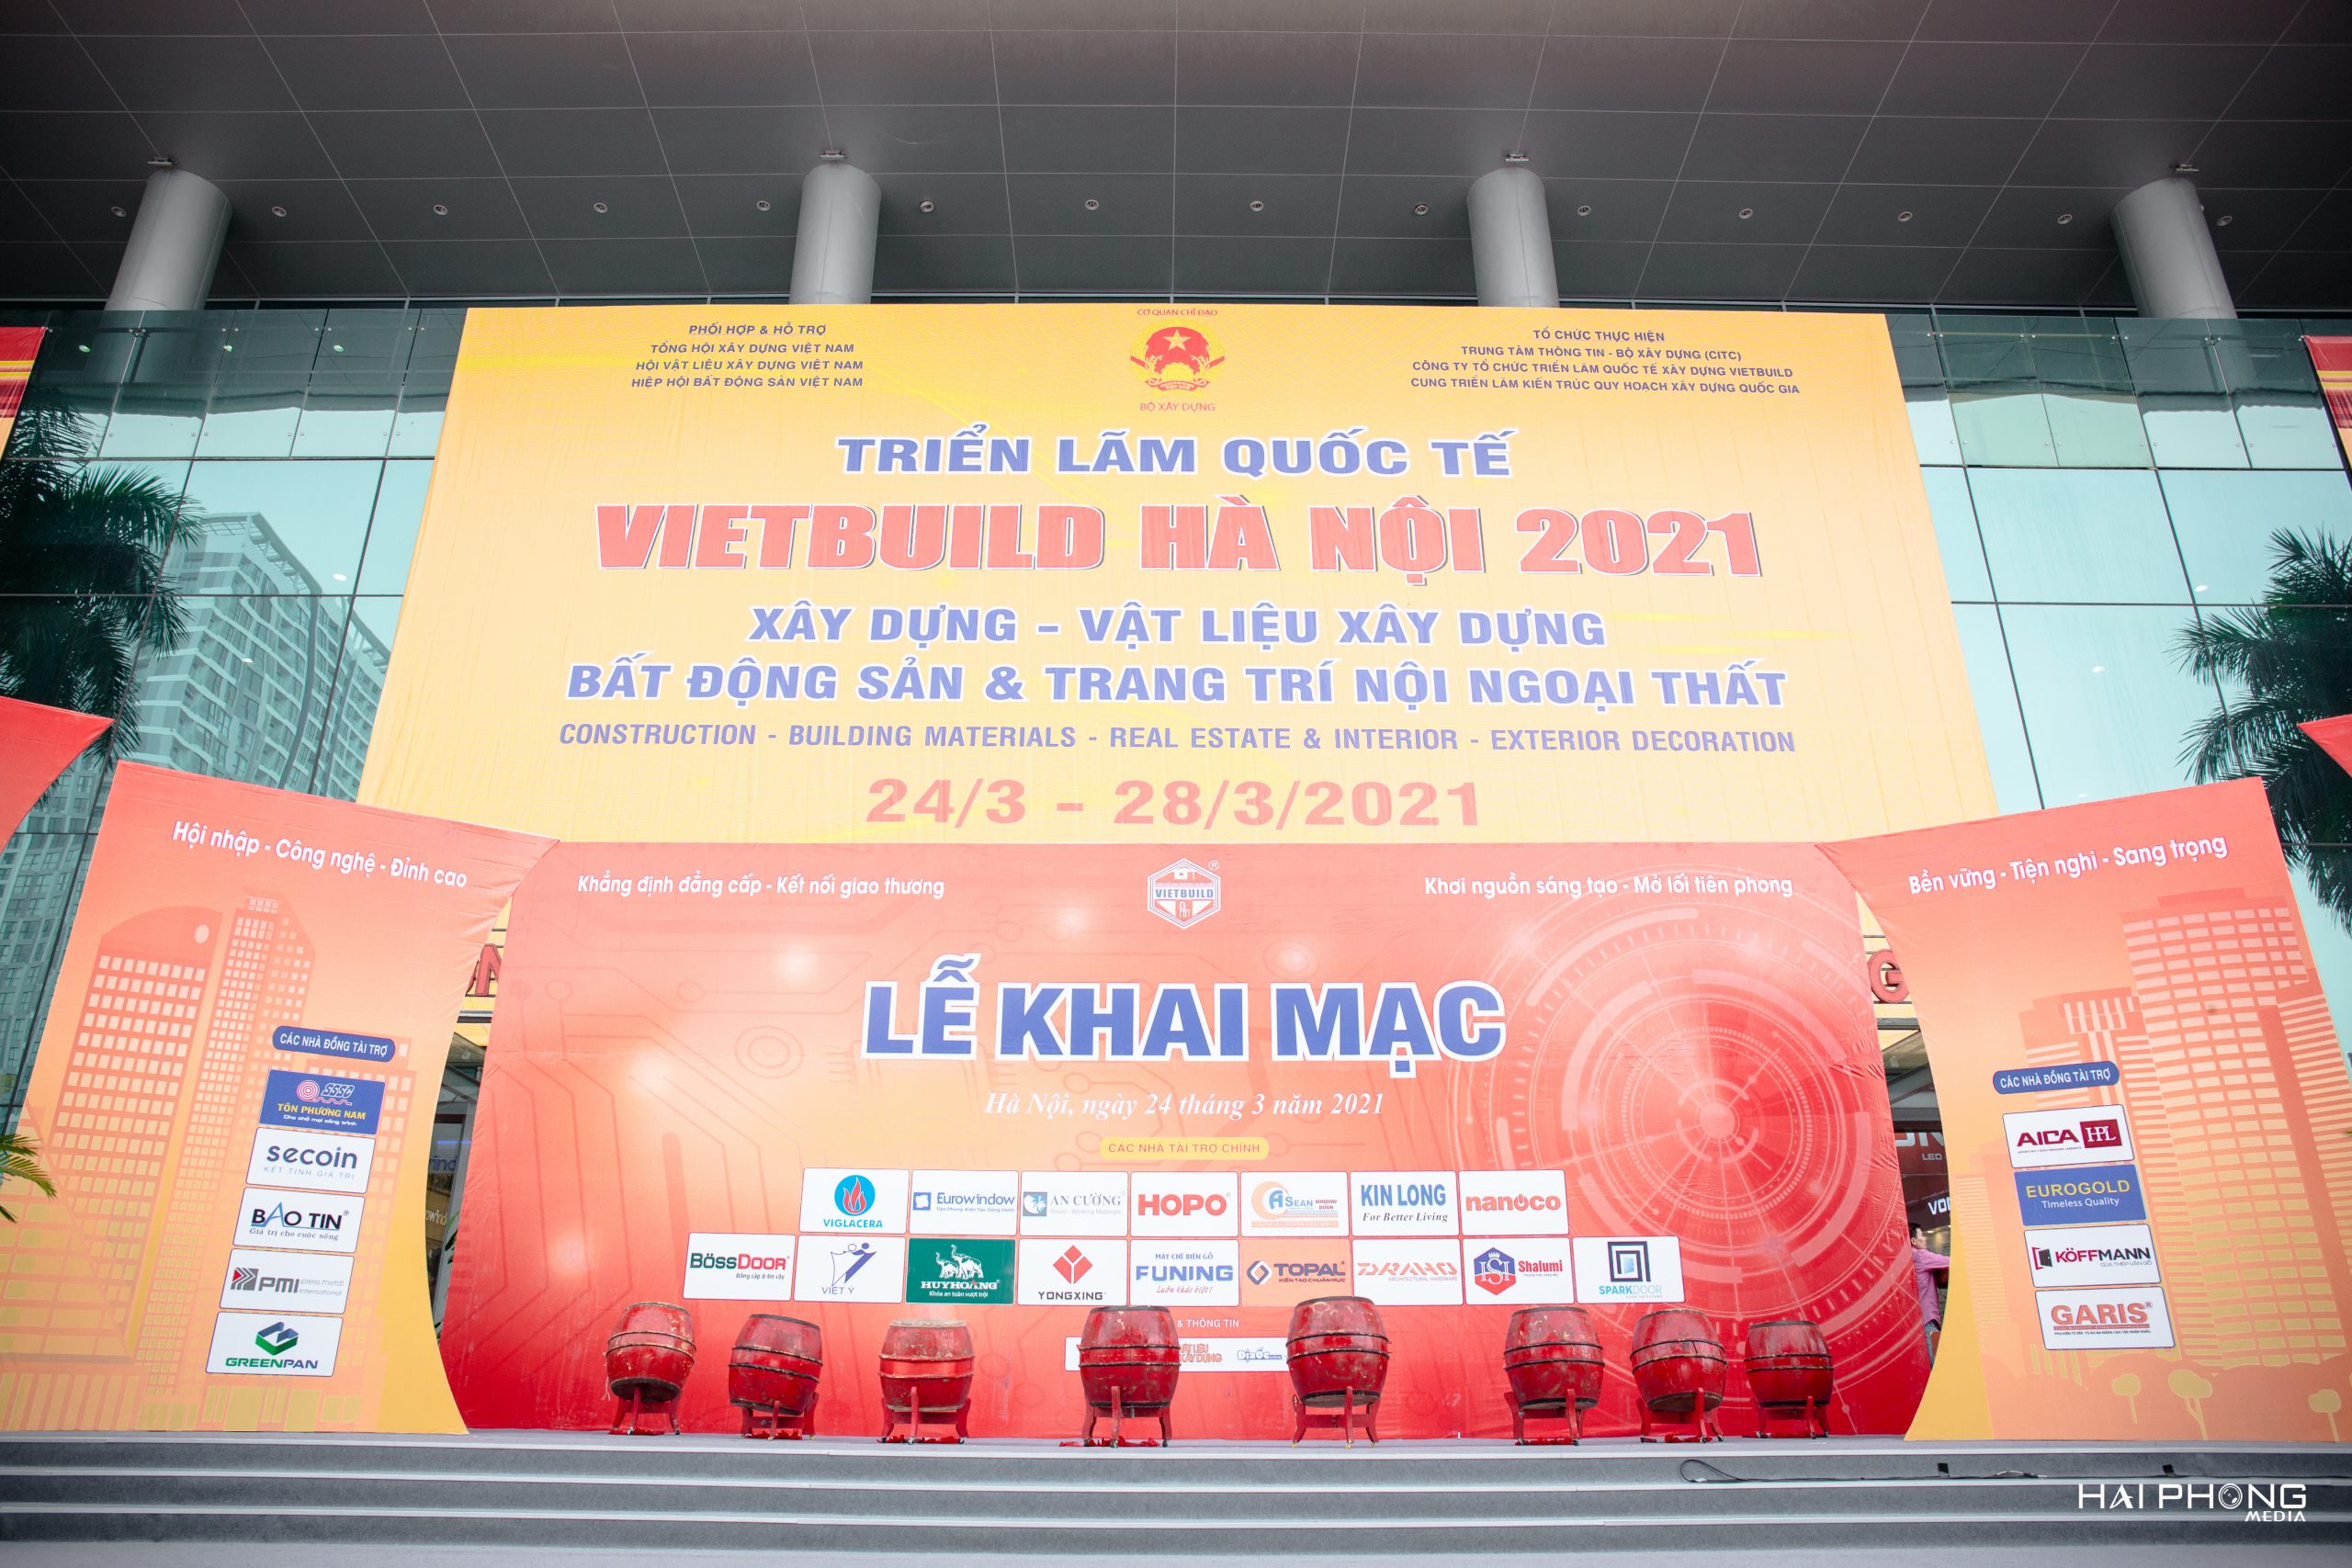 Triển lãm VIETBUILD 2021 Hà Nội